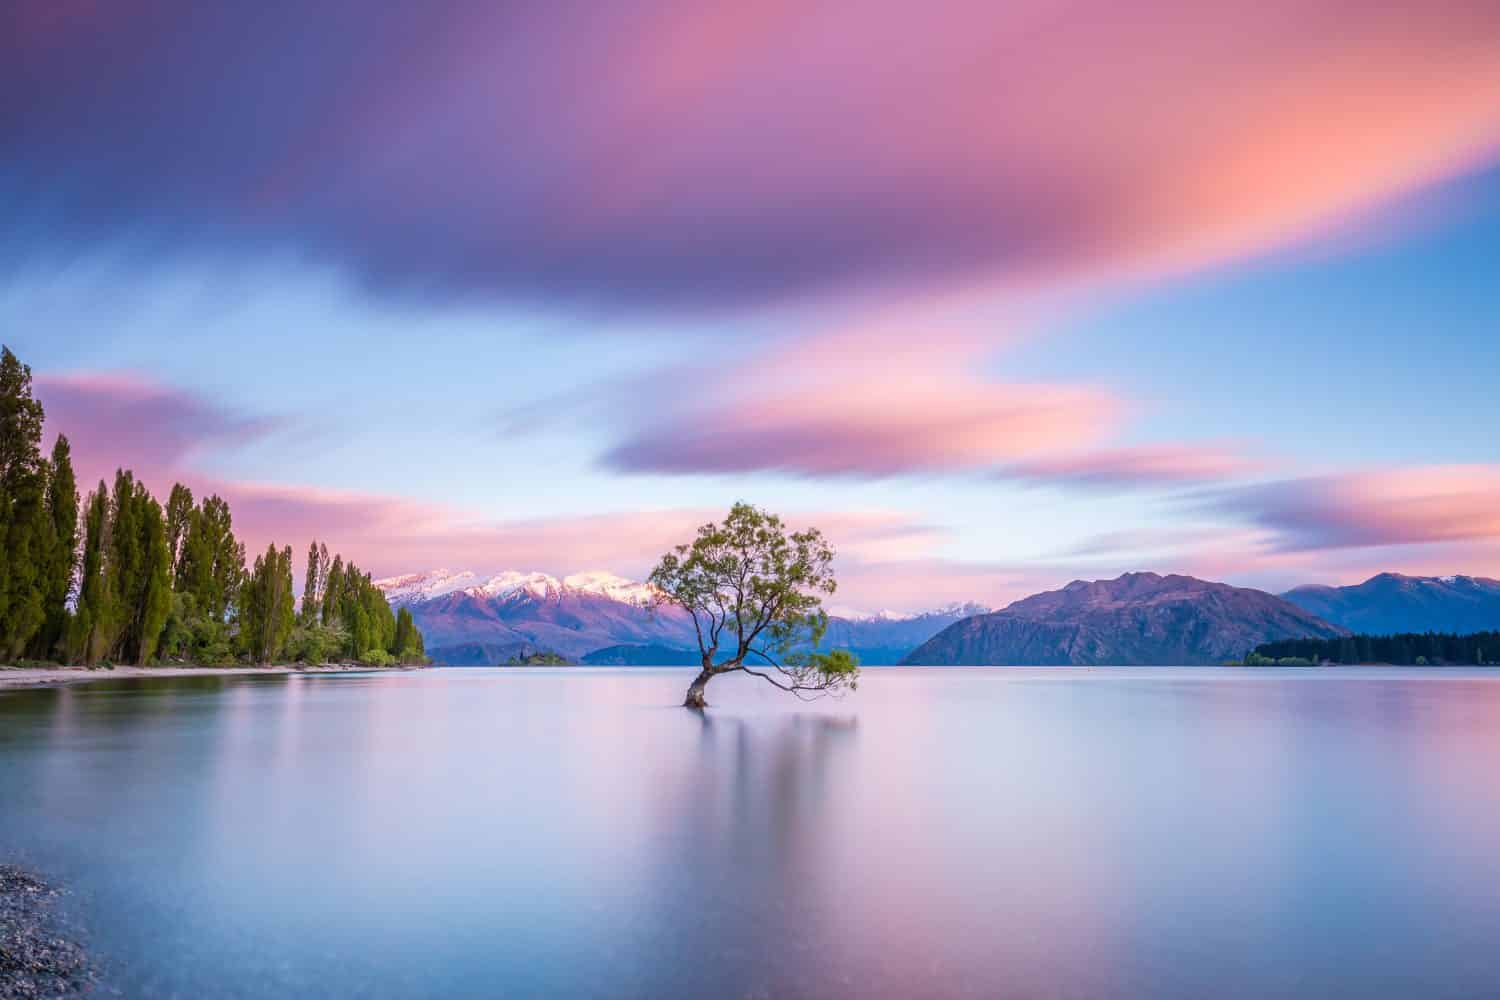 That Wanaka Tree at sunrise | Wanaka, NEW ZEALAND